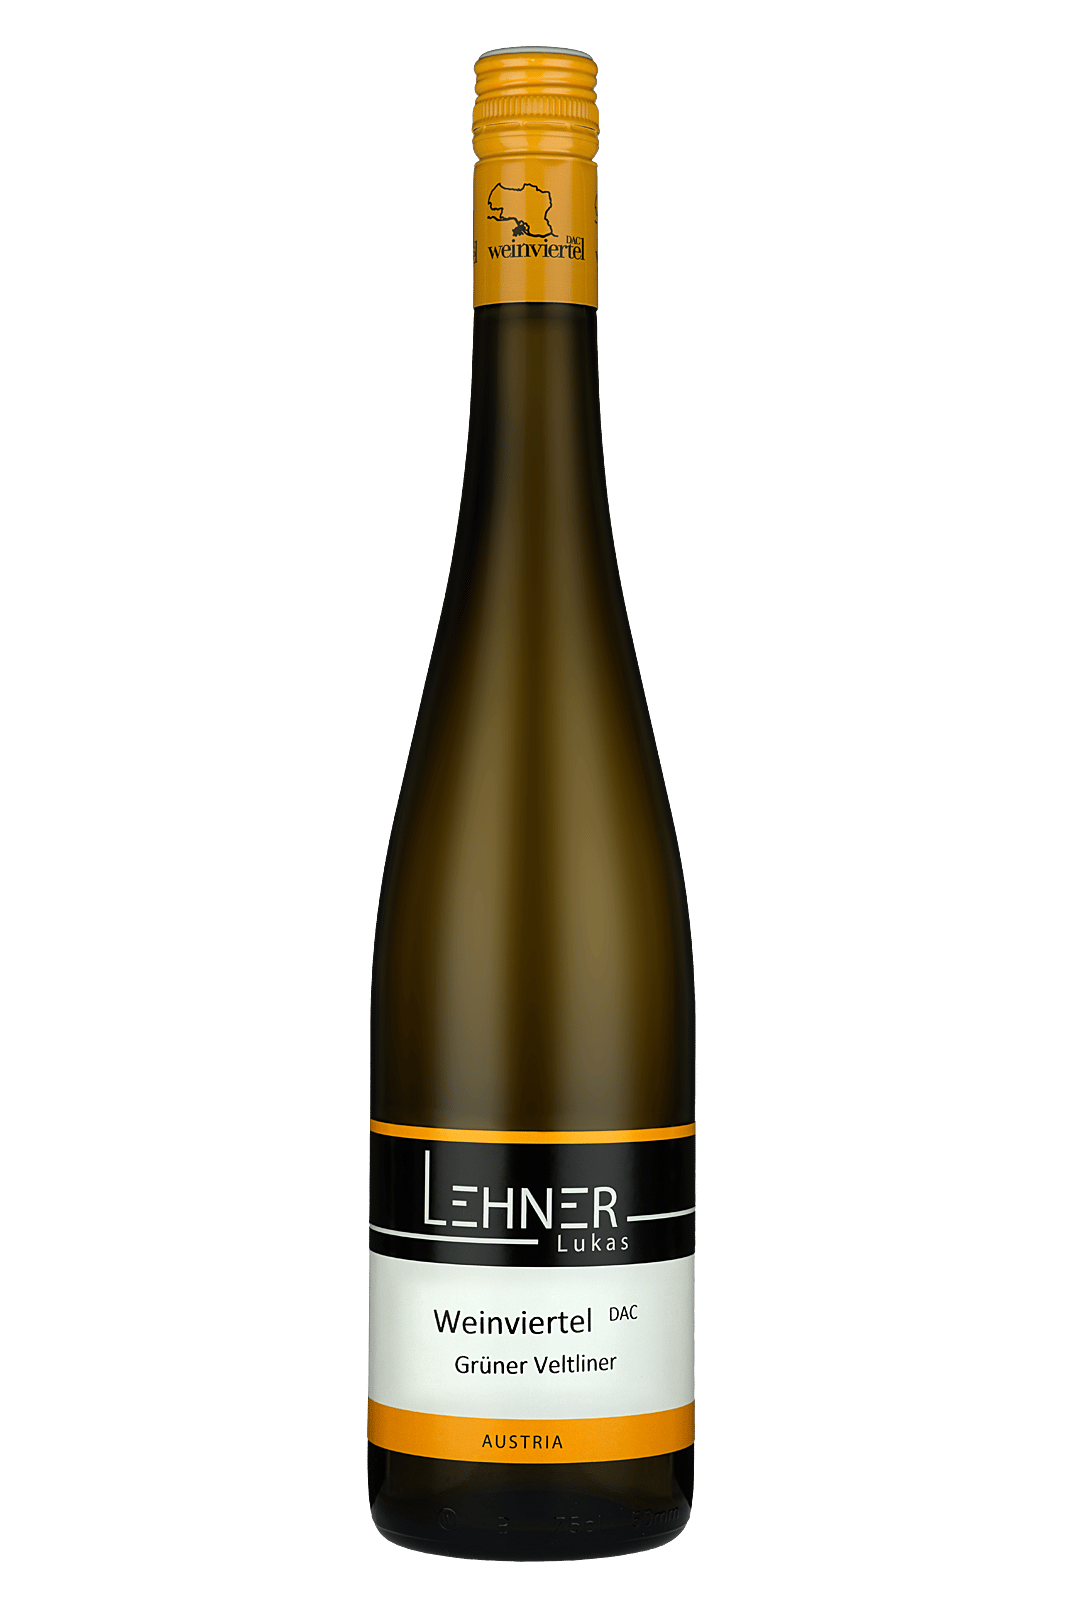 Lukas Lehner – Grüner Veltliner Weinviertel DAC